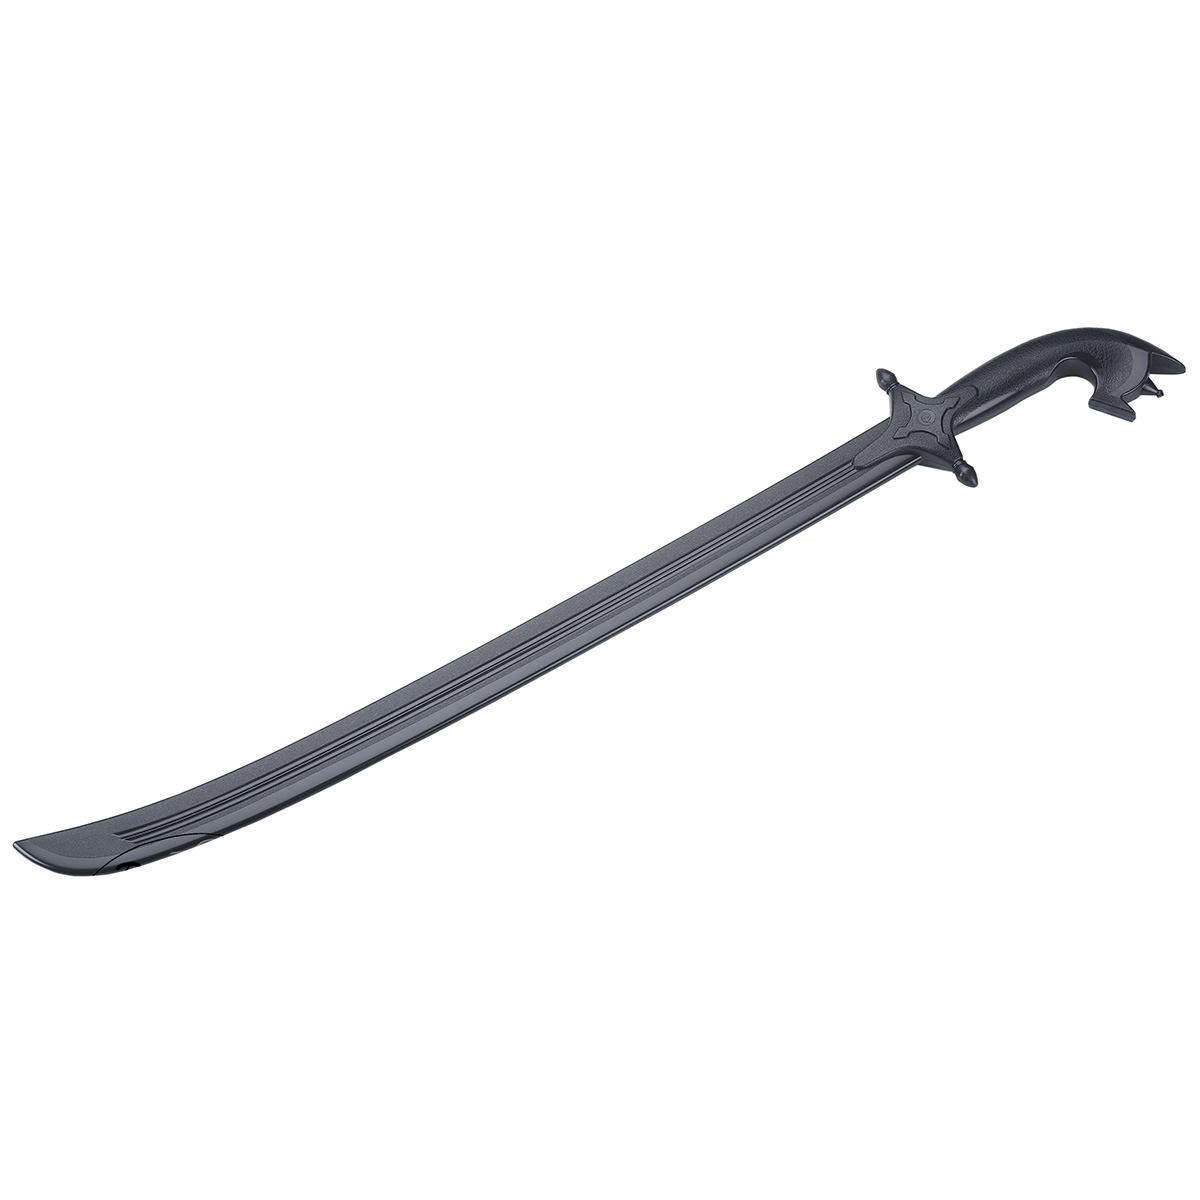 Black Polypropylene Arab Saif Sword - Click Image to Close